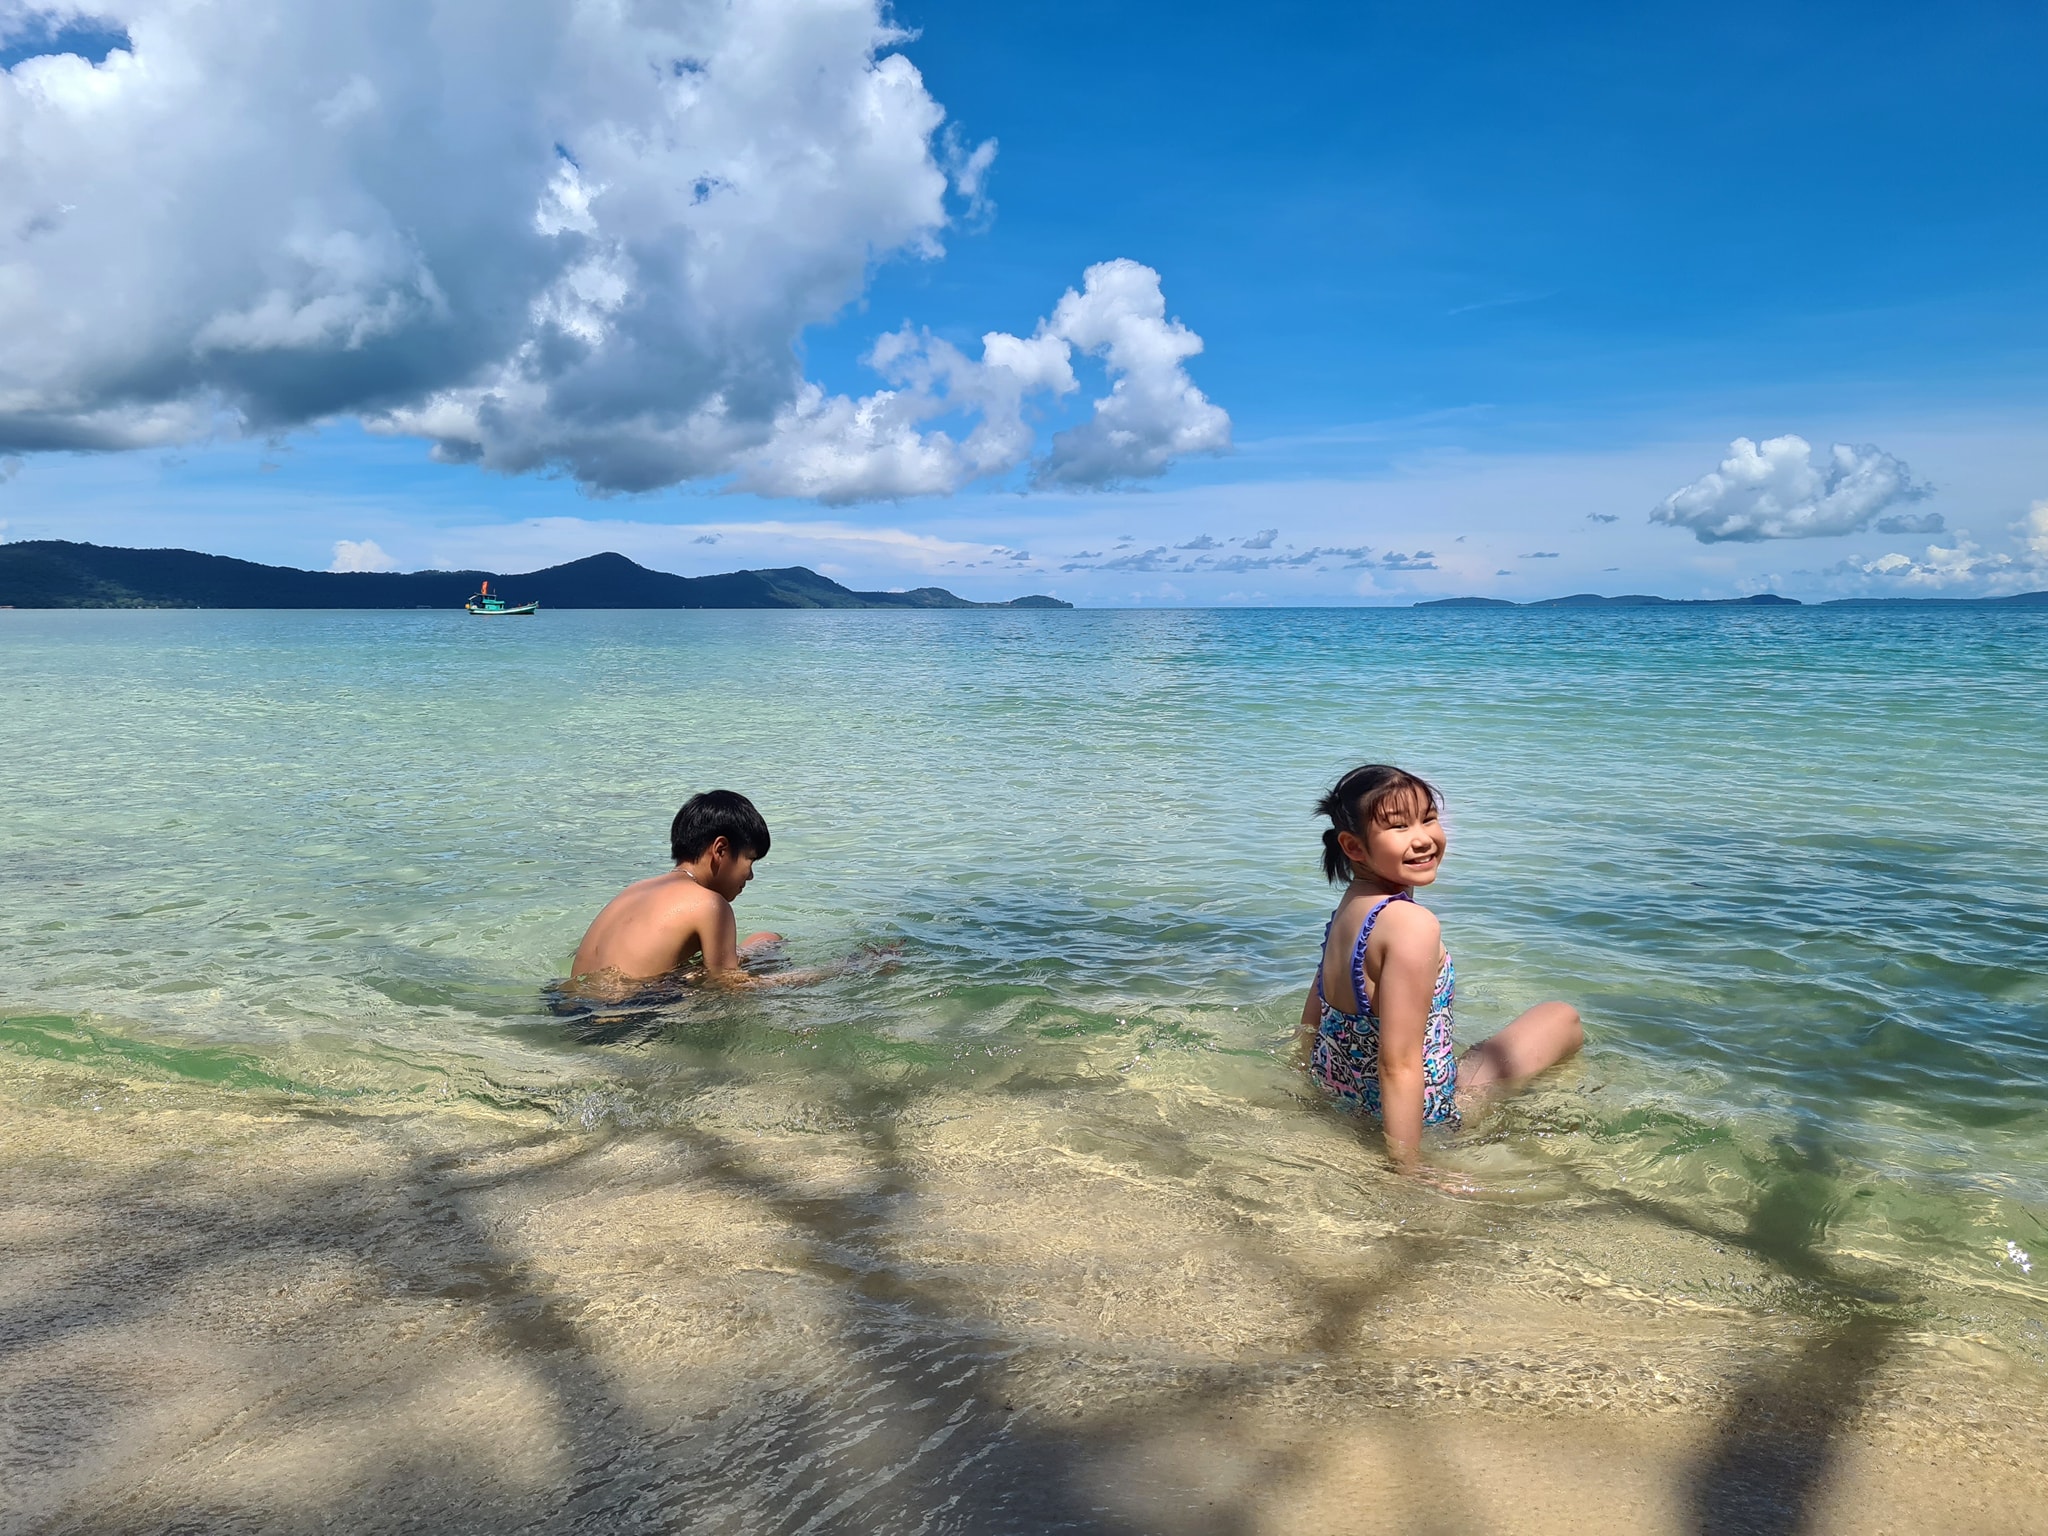 Nước trong xanh mát lành, phù hợp cho gia đình bạn tắm biển và tận hưởng thiên nhiên